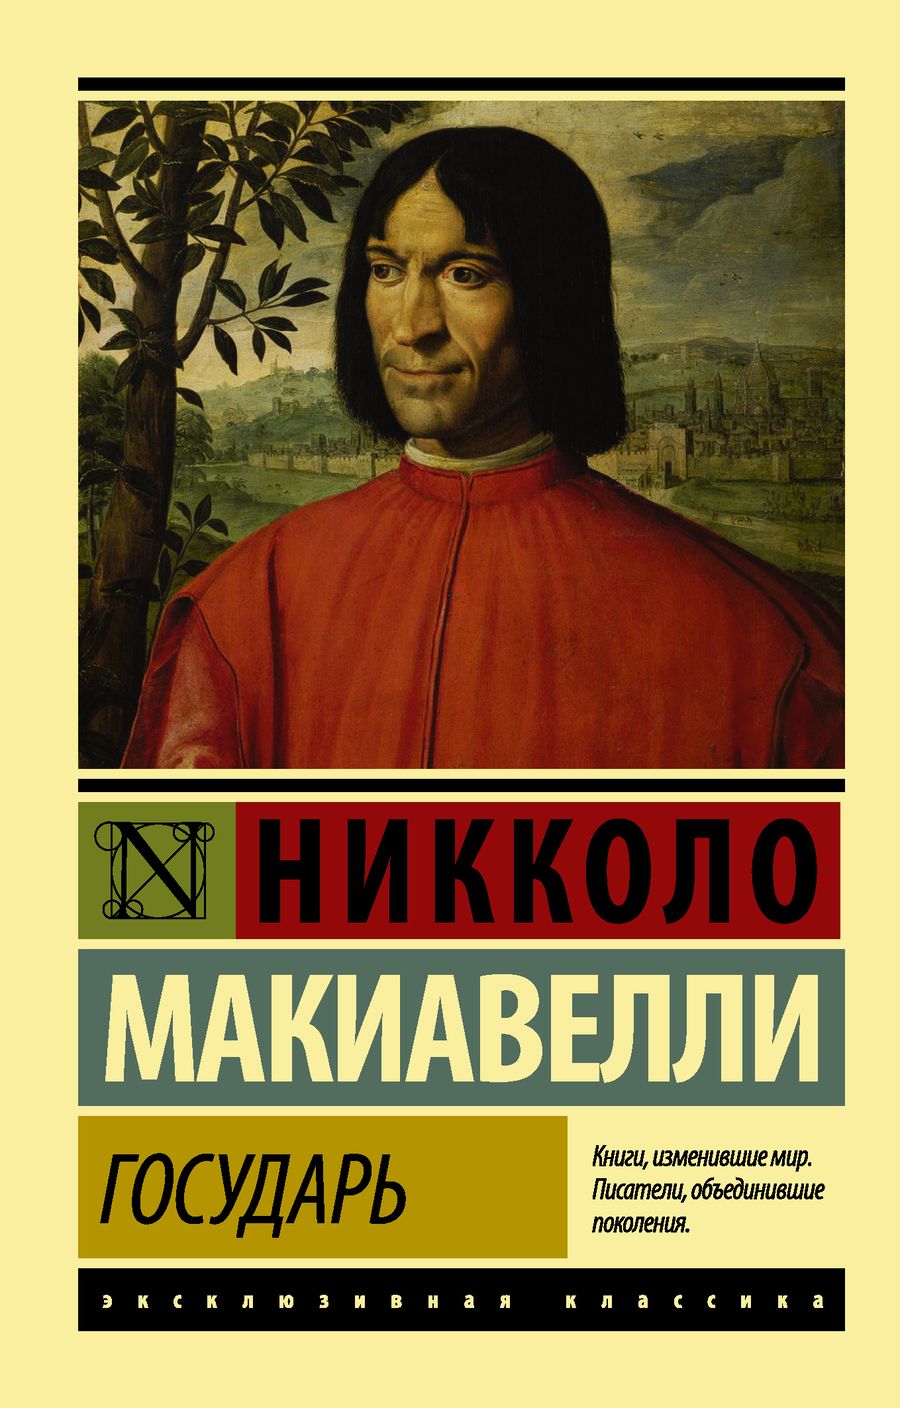 Обложка книги "Никколо Макиавелли: Государь. О военном искусстве"